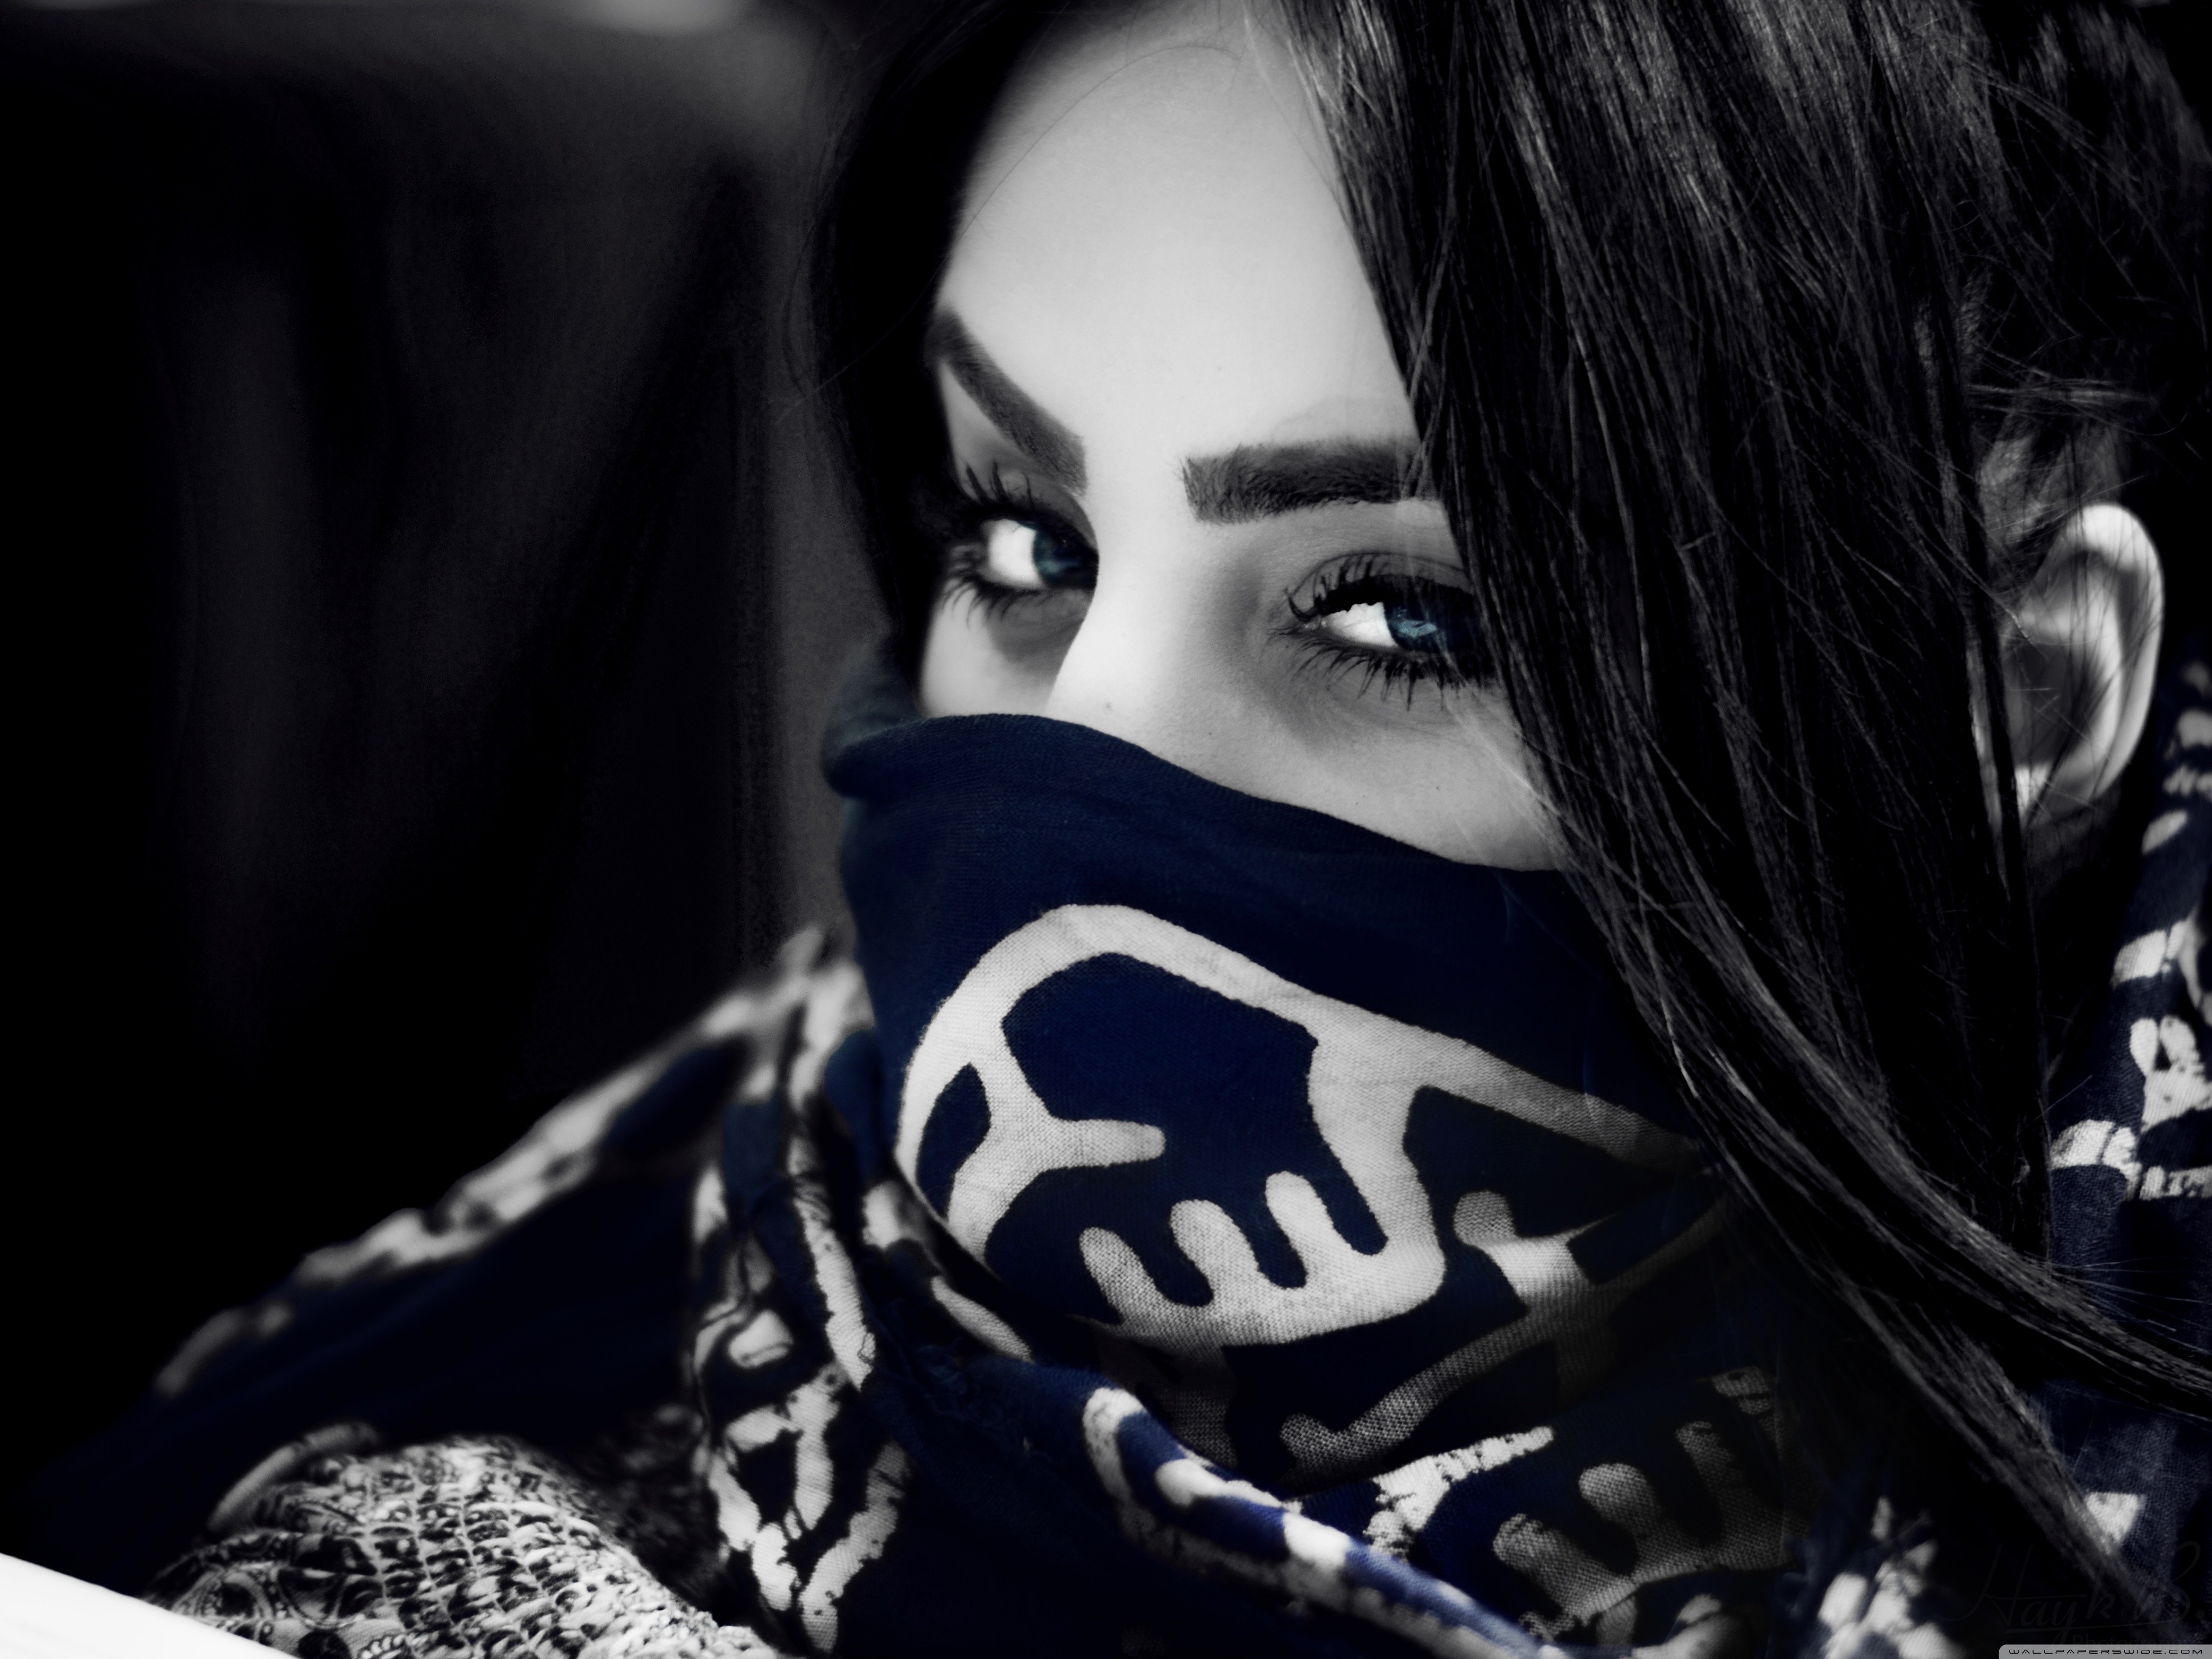 Rose mp3 remix. Девушка в маске. Девушка в бандане на лице. Красивые арабские девушки. Красивая девушка в маске.